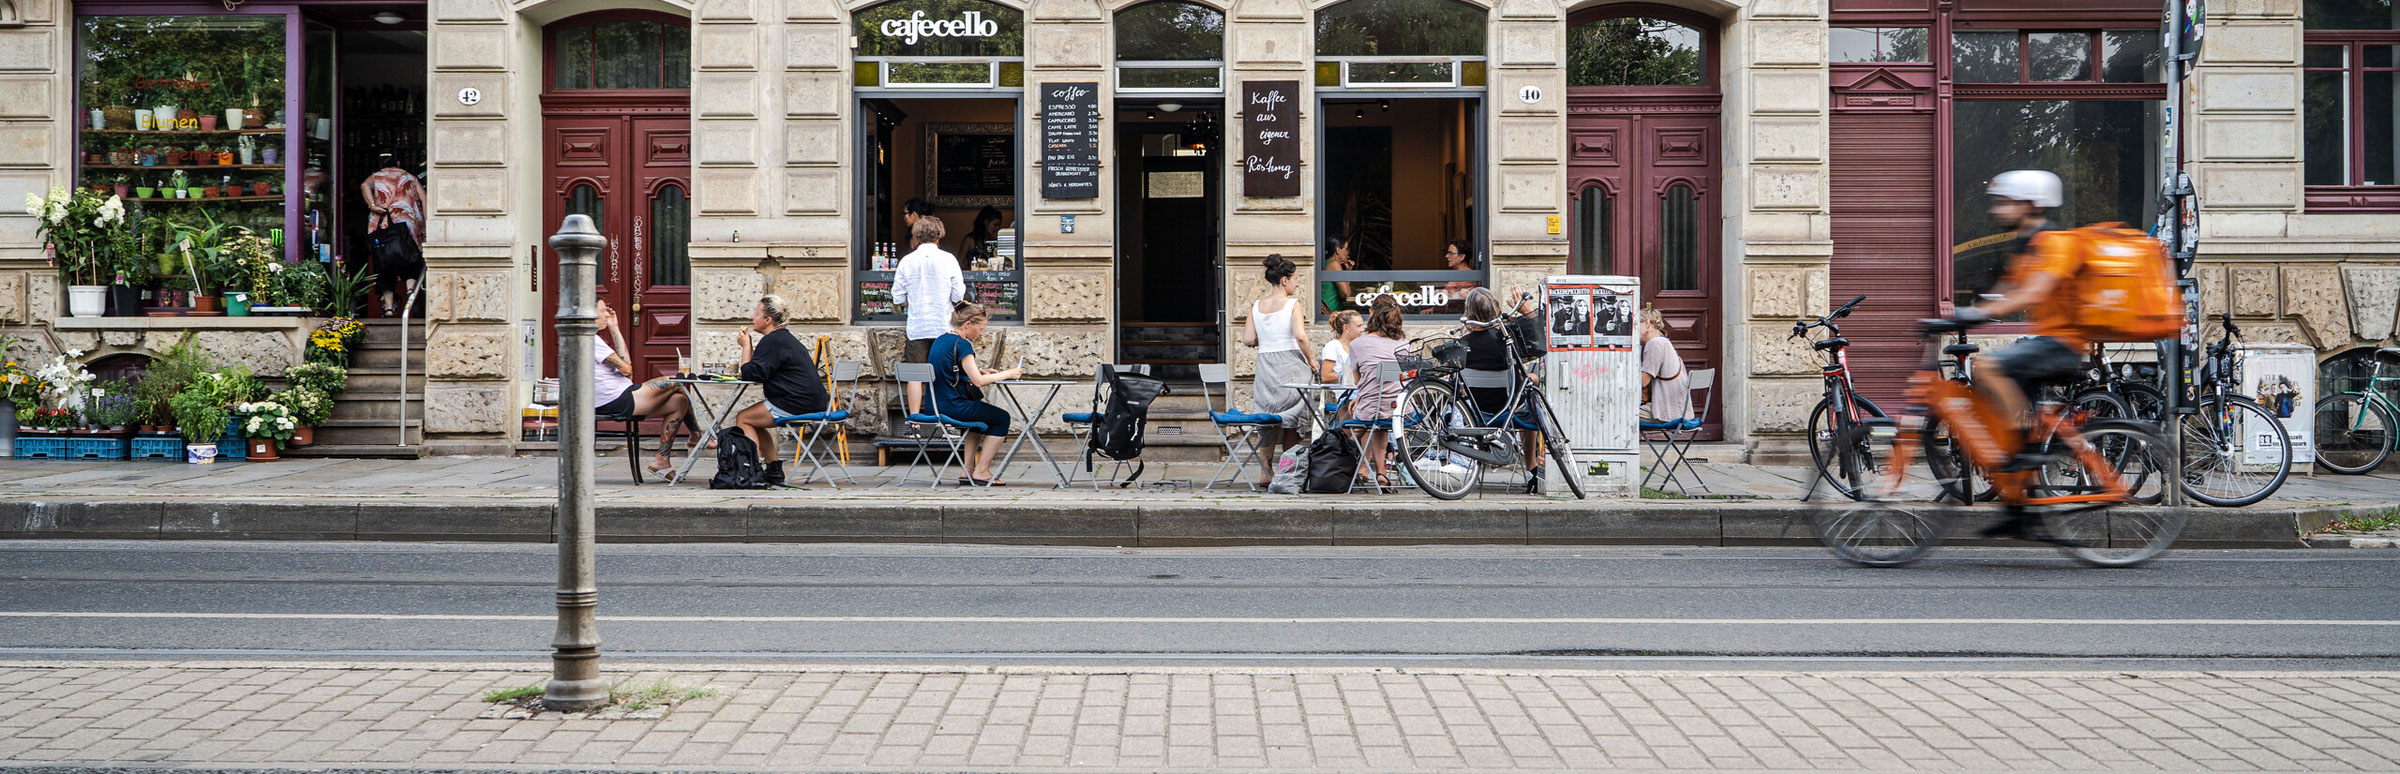 Blick auf einen Bürgersteig mit Café.